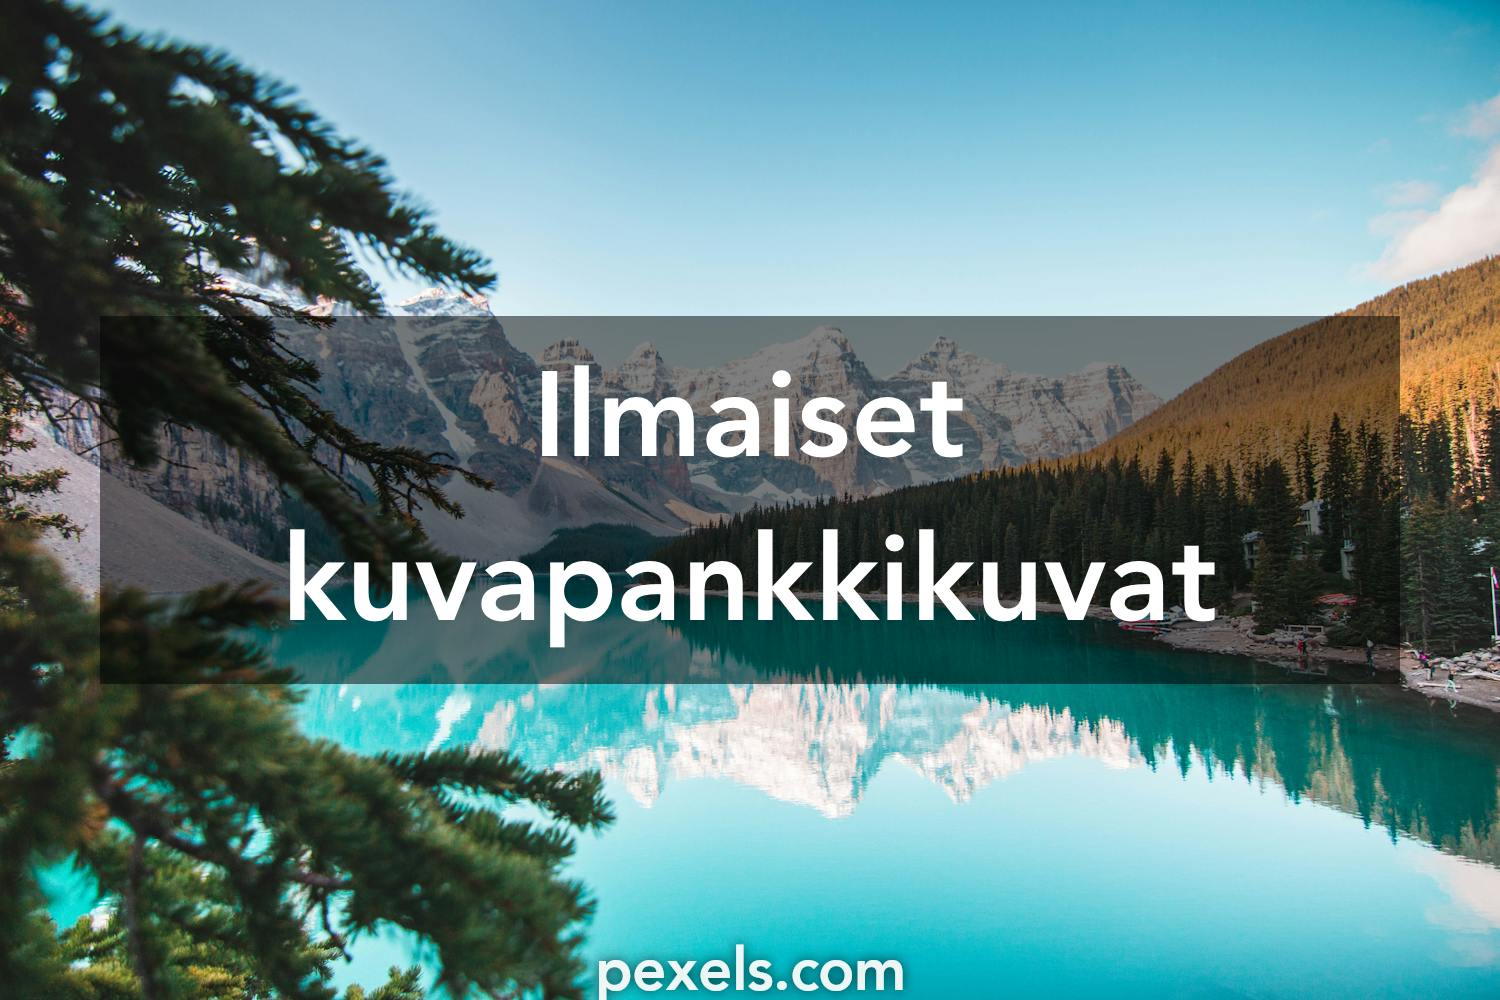 100 000+ parasta kuvaa aiheesta Maisema · Täysin ilmainen lataus ·  Pexels-kuvituskuvapankkikuvat